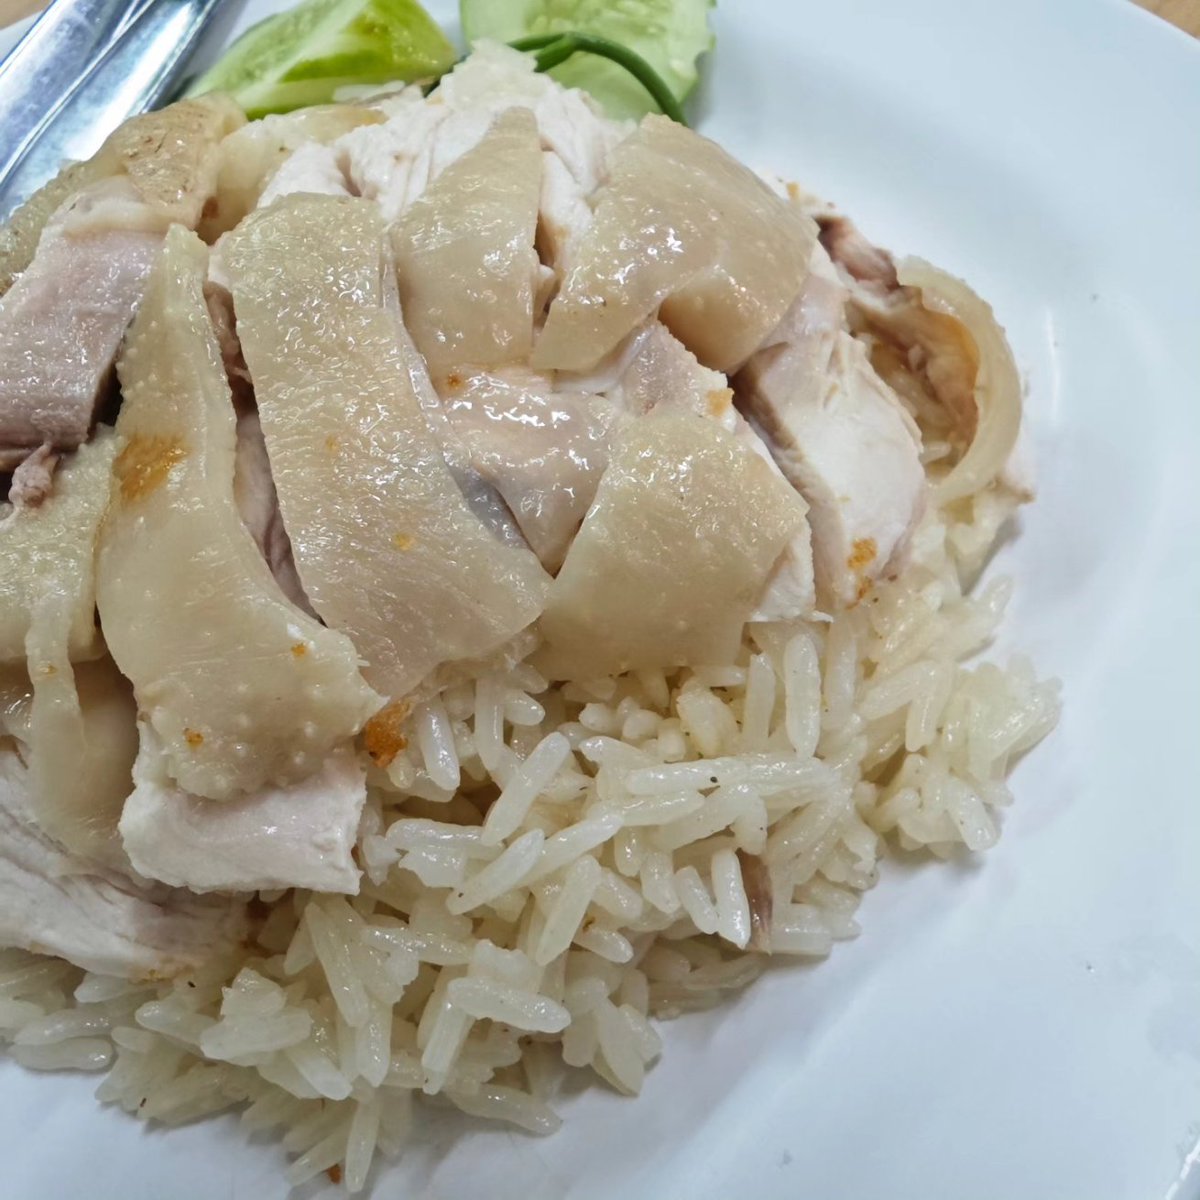 .

ข้าวมันไก่ : steamed rice topped with chicken

#rice #chicken #steamed  #food #thaifood #delicious   #foodstylist #foodphoto #foodphotography #foodphotographer #foodoftheday #dessertoftheday #pictureoftheday #photooftheday   #xiaomi14ultra​ #xiaomi #thailand